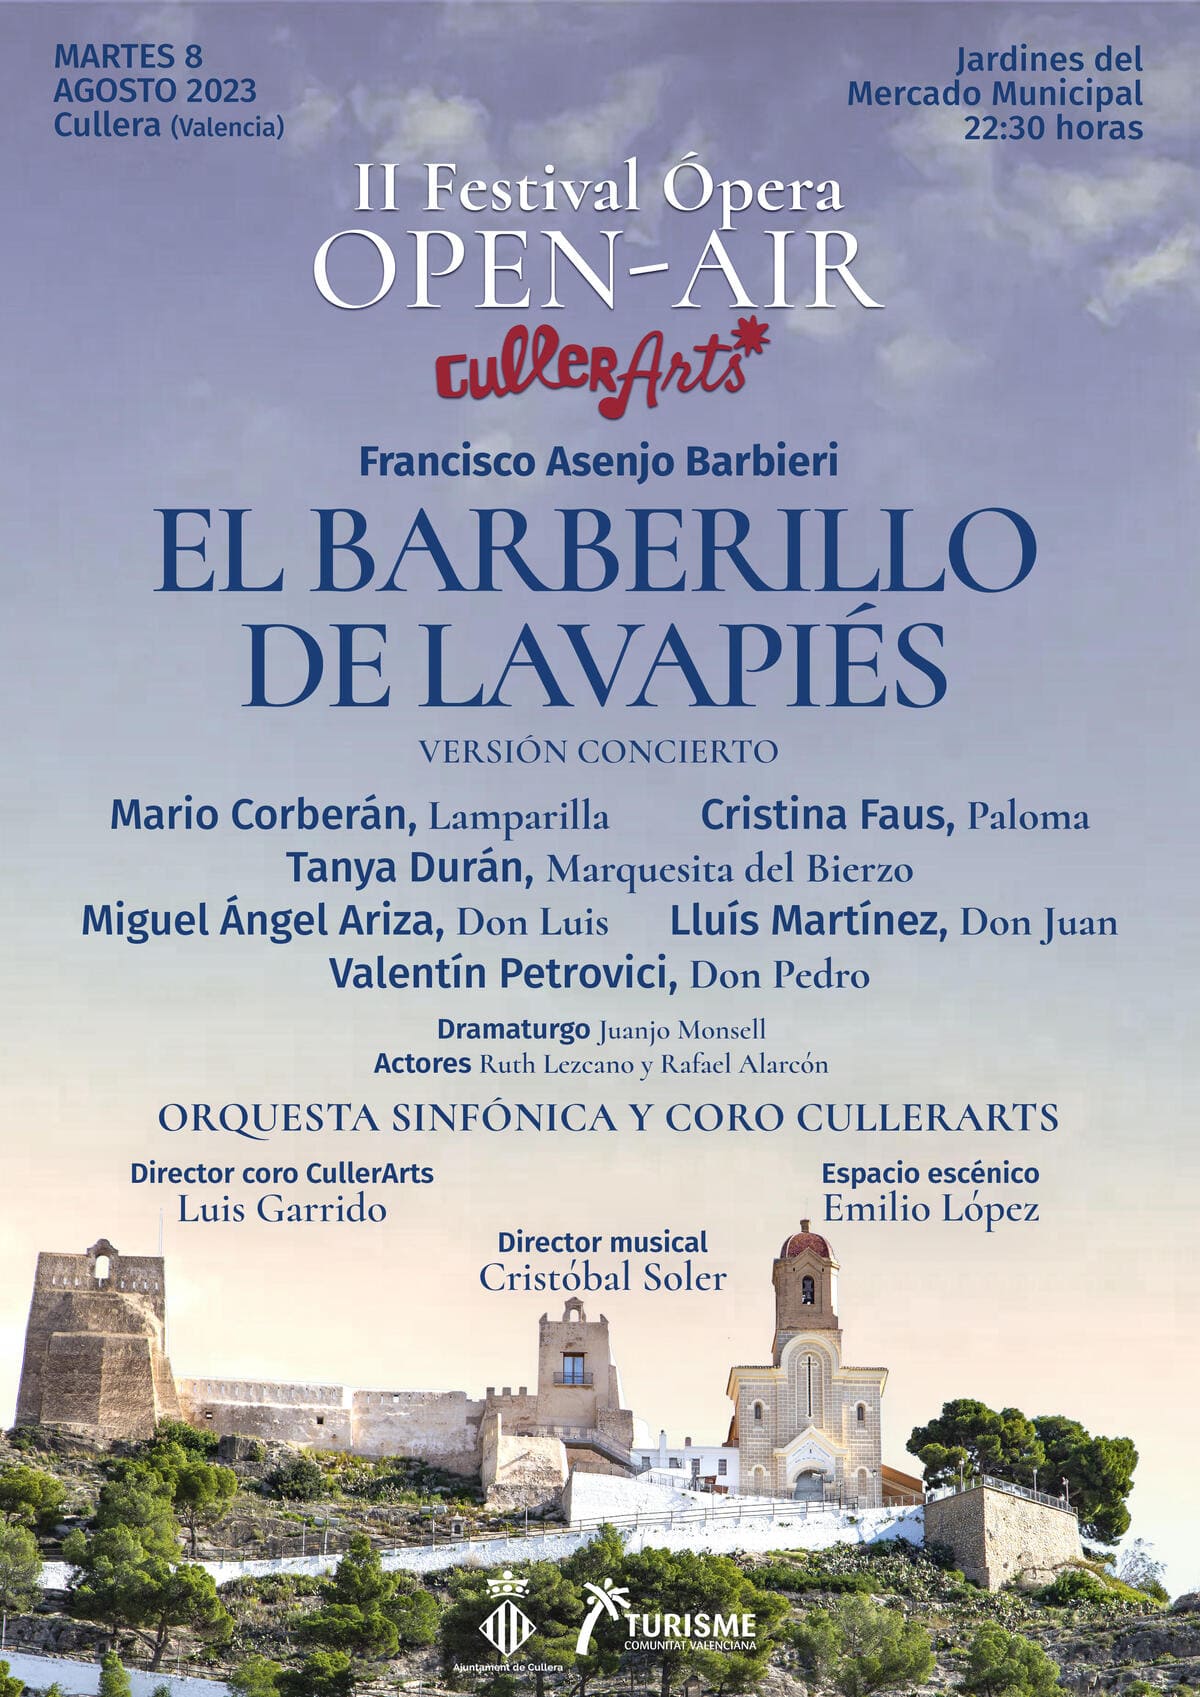 El barberillo de Lavapiés - Ópera OpenAir CullerArts 2023